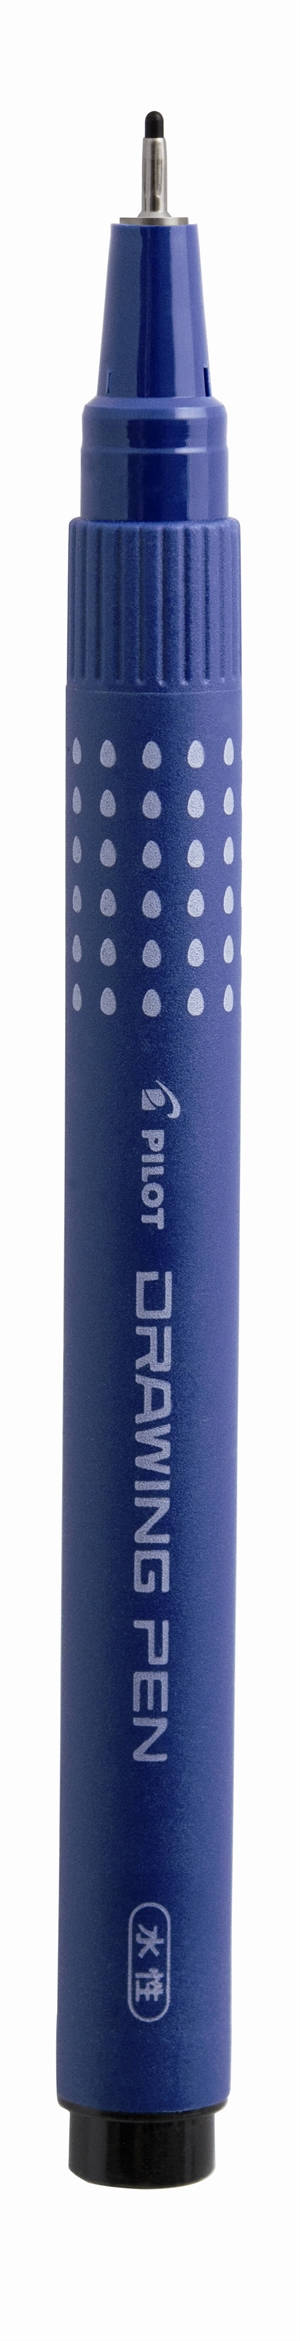 Caneta Pilot Filtpen com tampa, caneta de desenho 0,8mm, preta